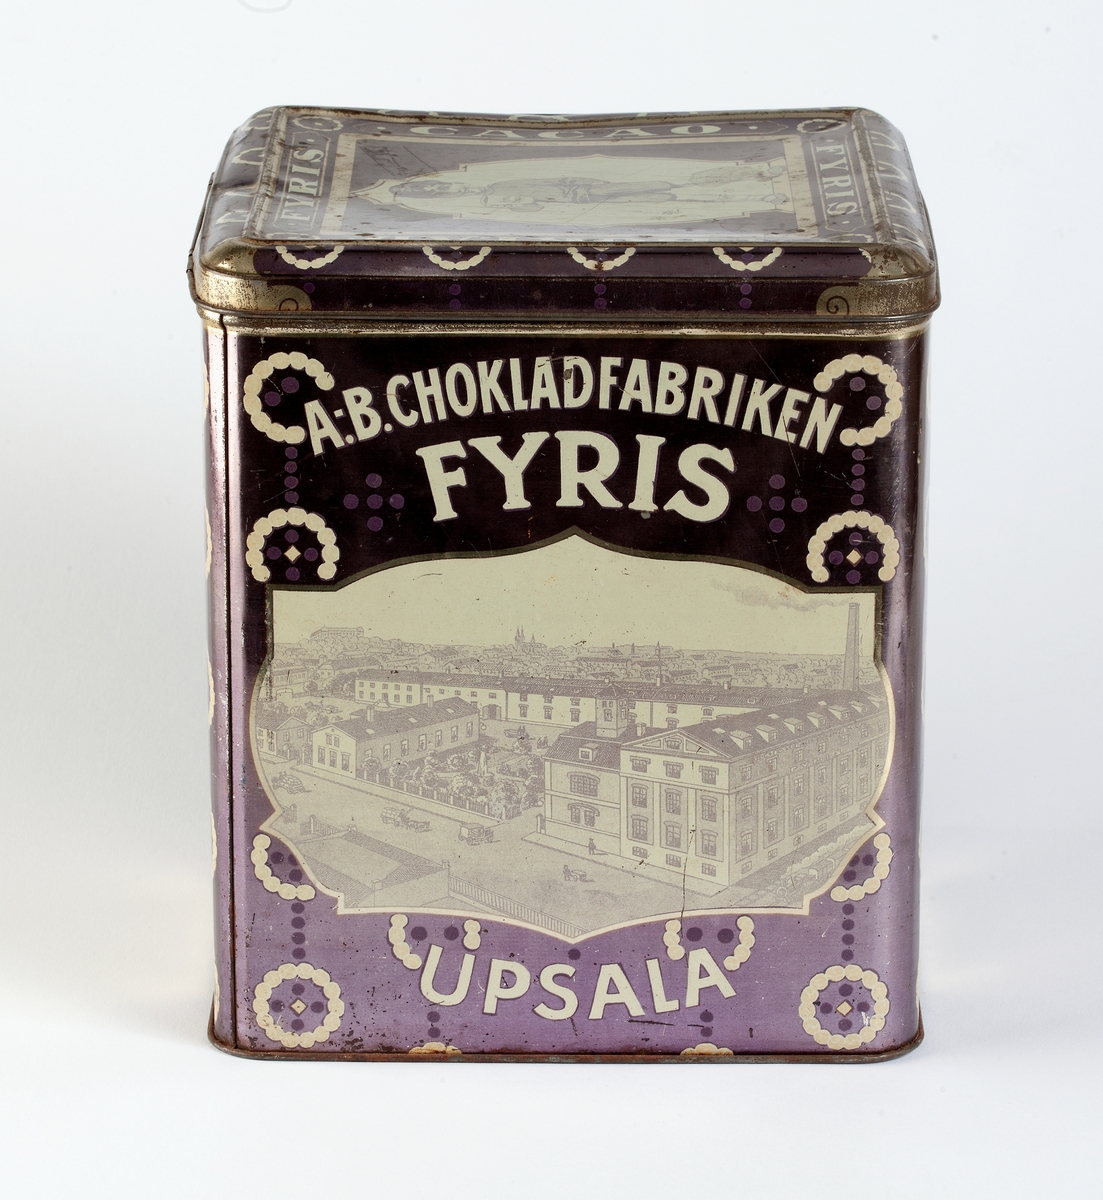 Burk av järnplåt, målad i ljuslila med dekor i vitt. Text "A-B. Chokladfabriken Fyris Upsala".